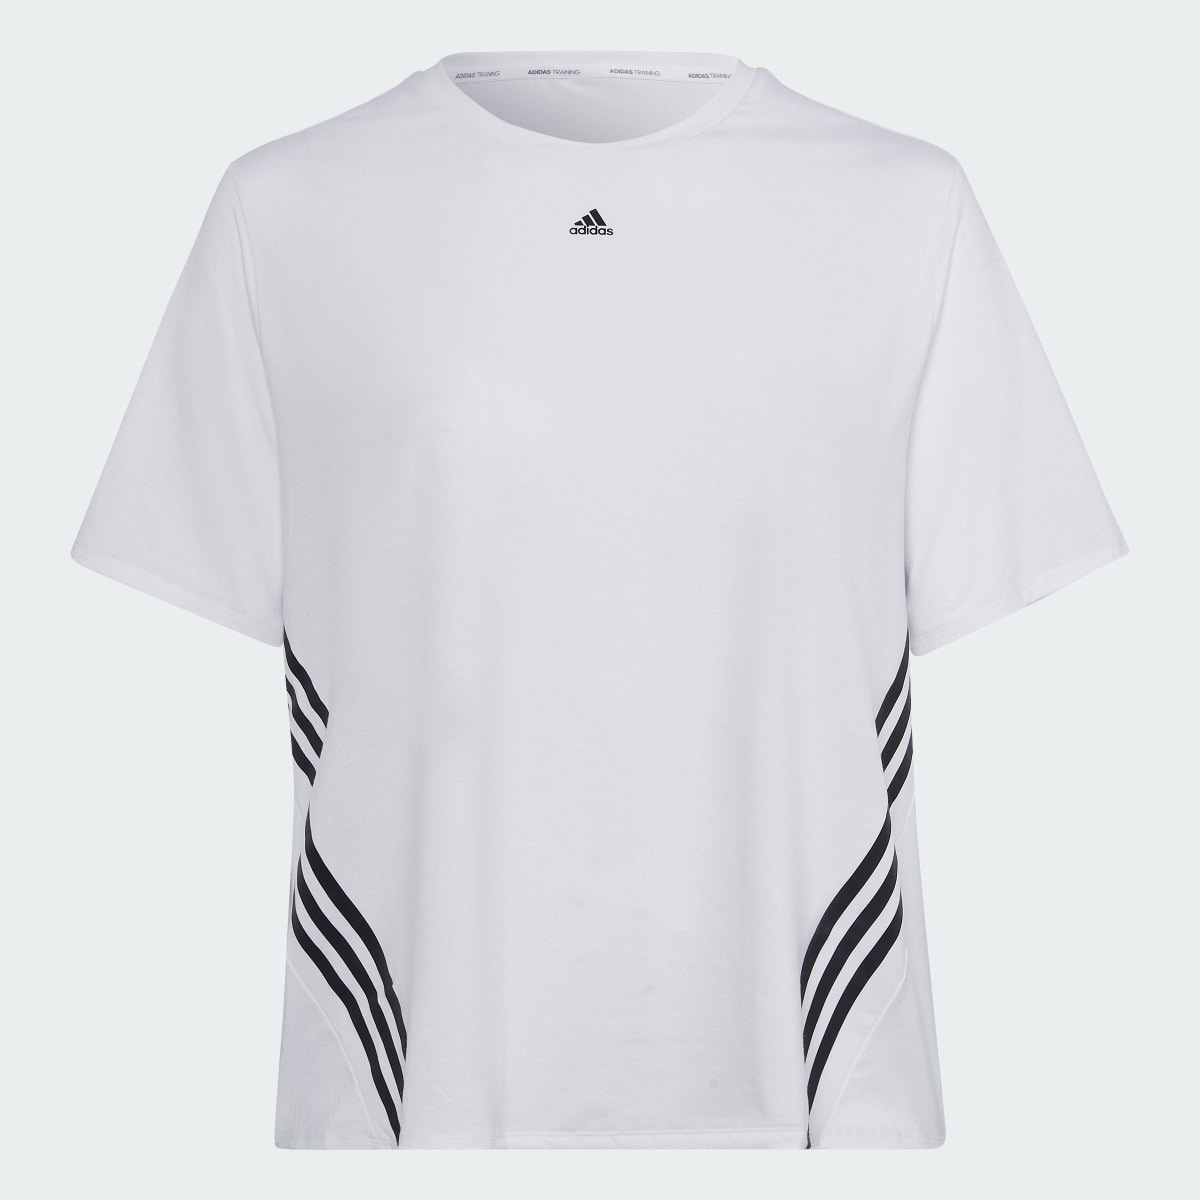 Adidas Train Icons 3-Stripes T-Shirt (Plus Size). 5